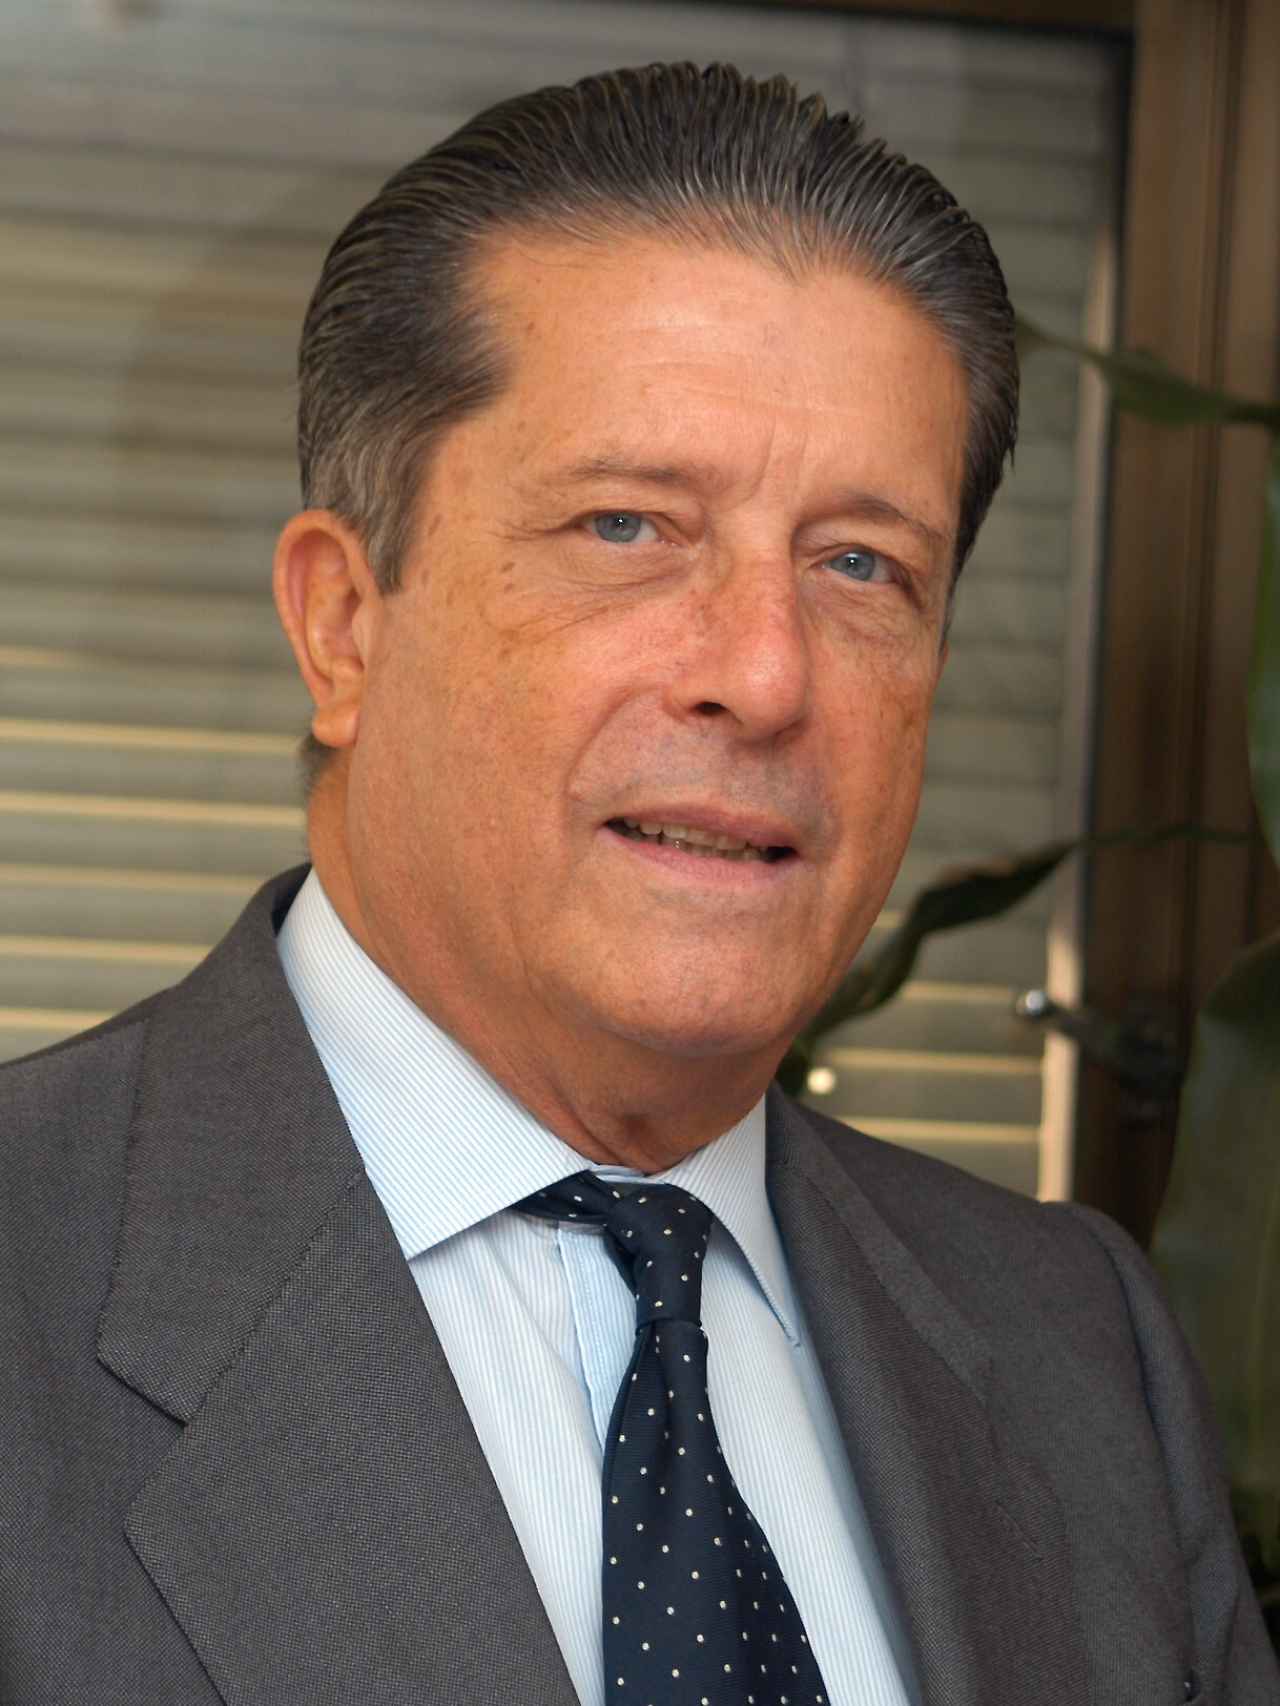 Federico Mayor Zaragoza es presidente de la Fundación Cultura de Paz y ex Director General de la UNESCO